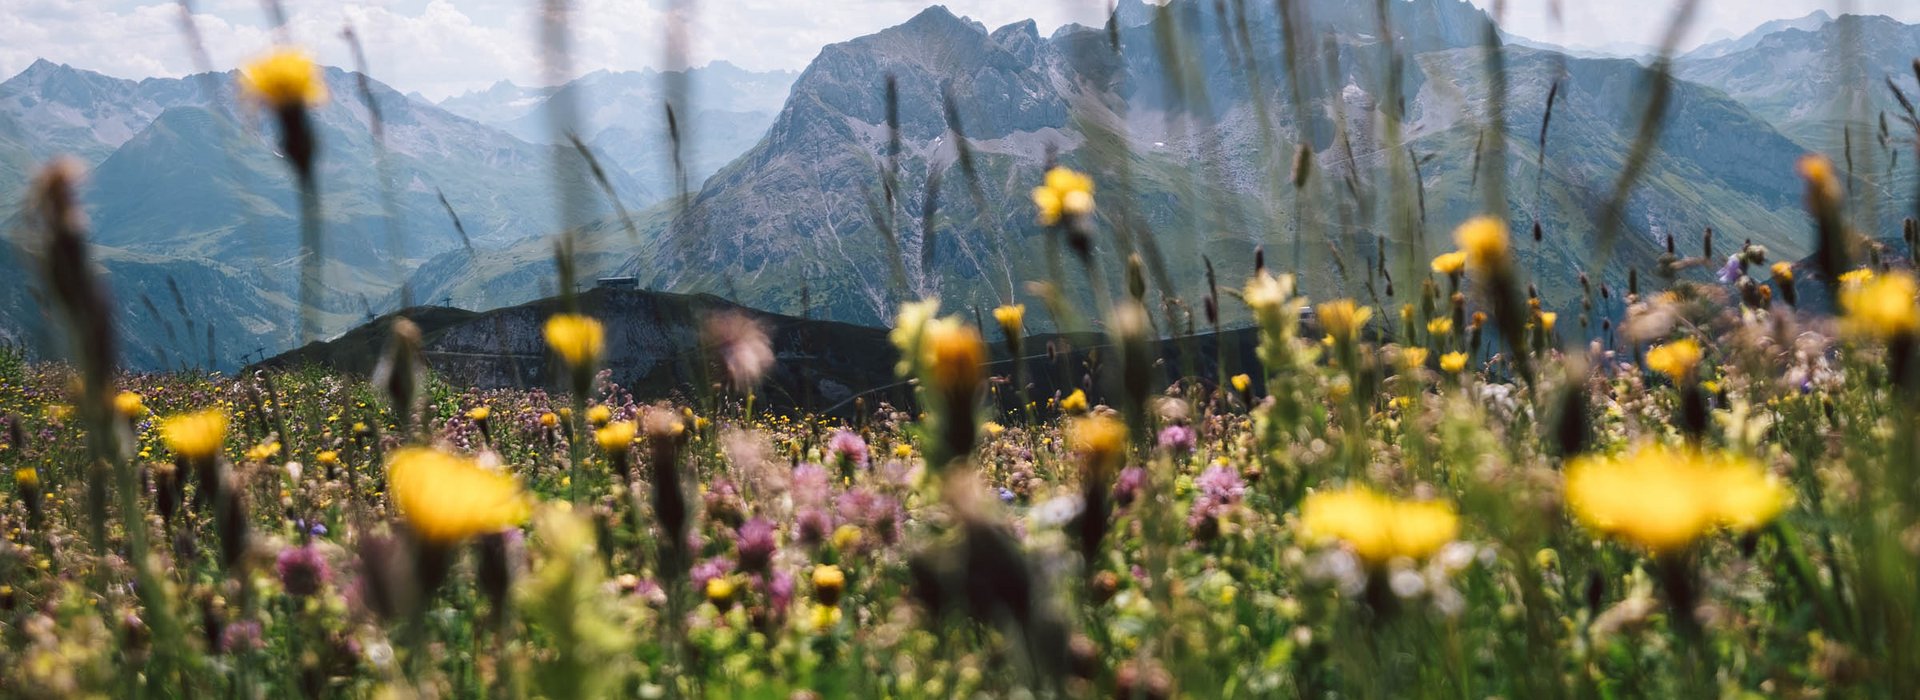 Bunte Blumenwiese mit Ausblick auf die umliegende Berglandschaft